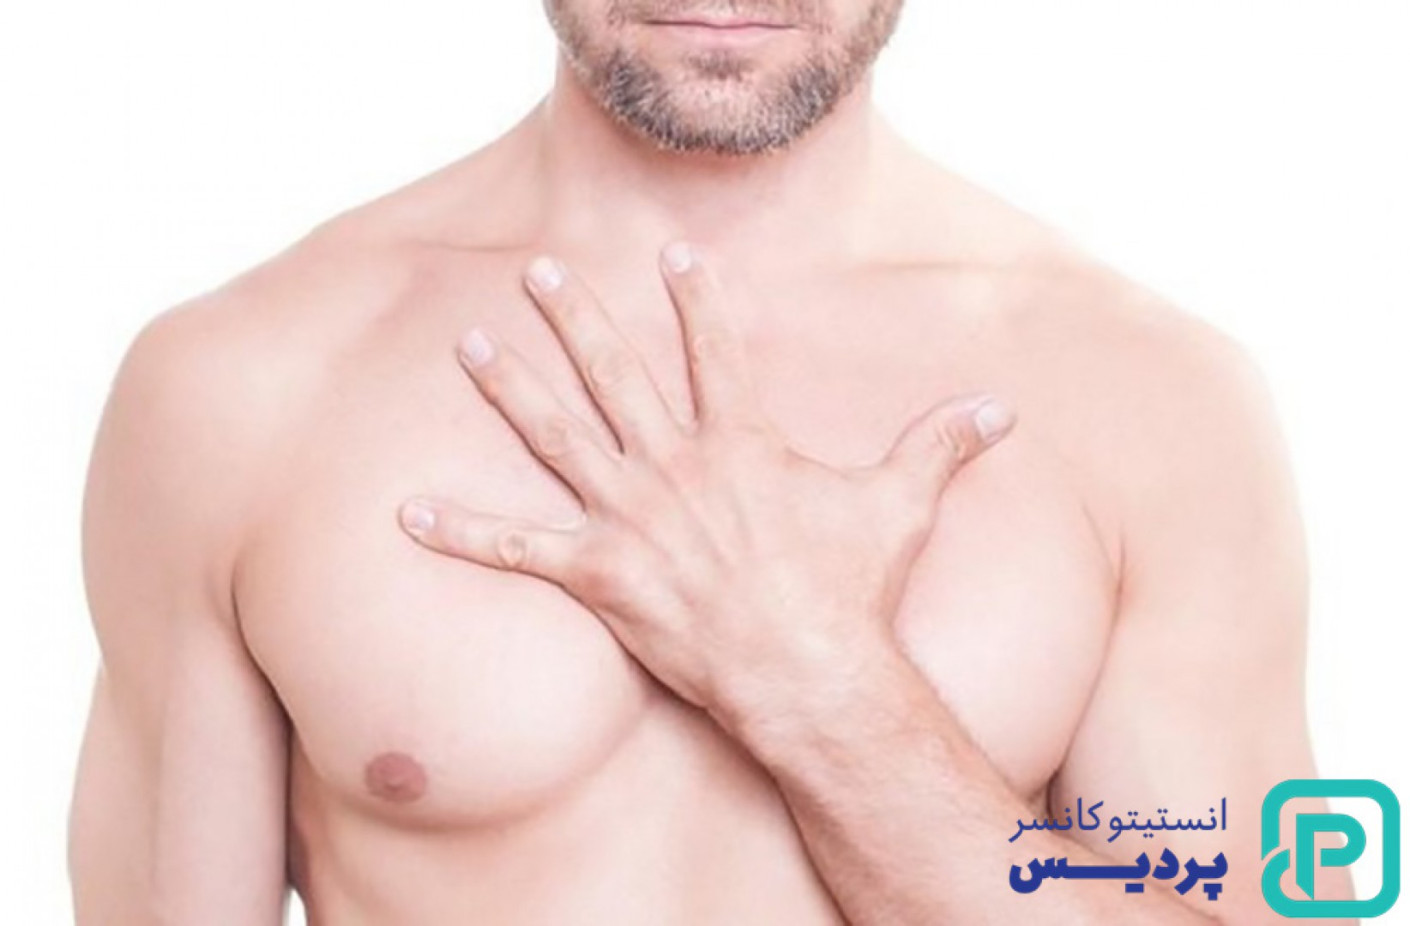 شیمی درمانی سرطان سینه مردان